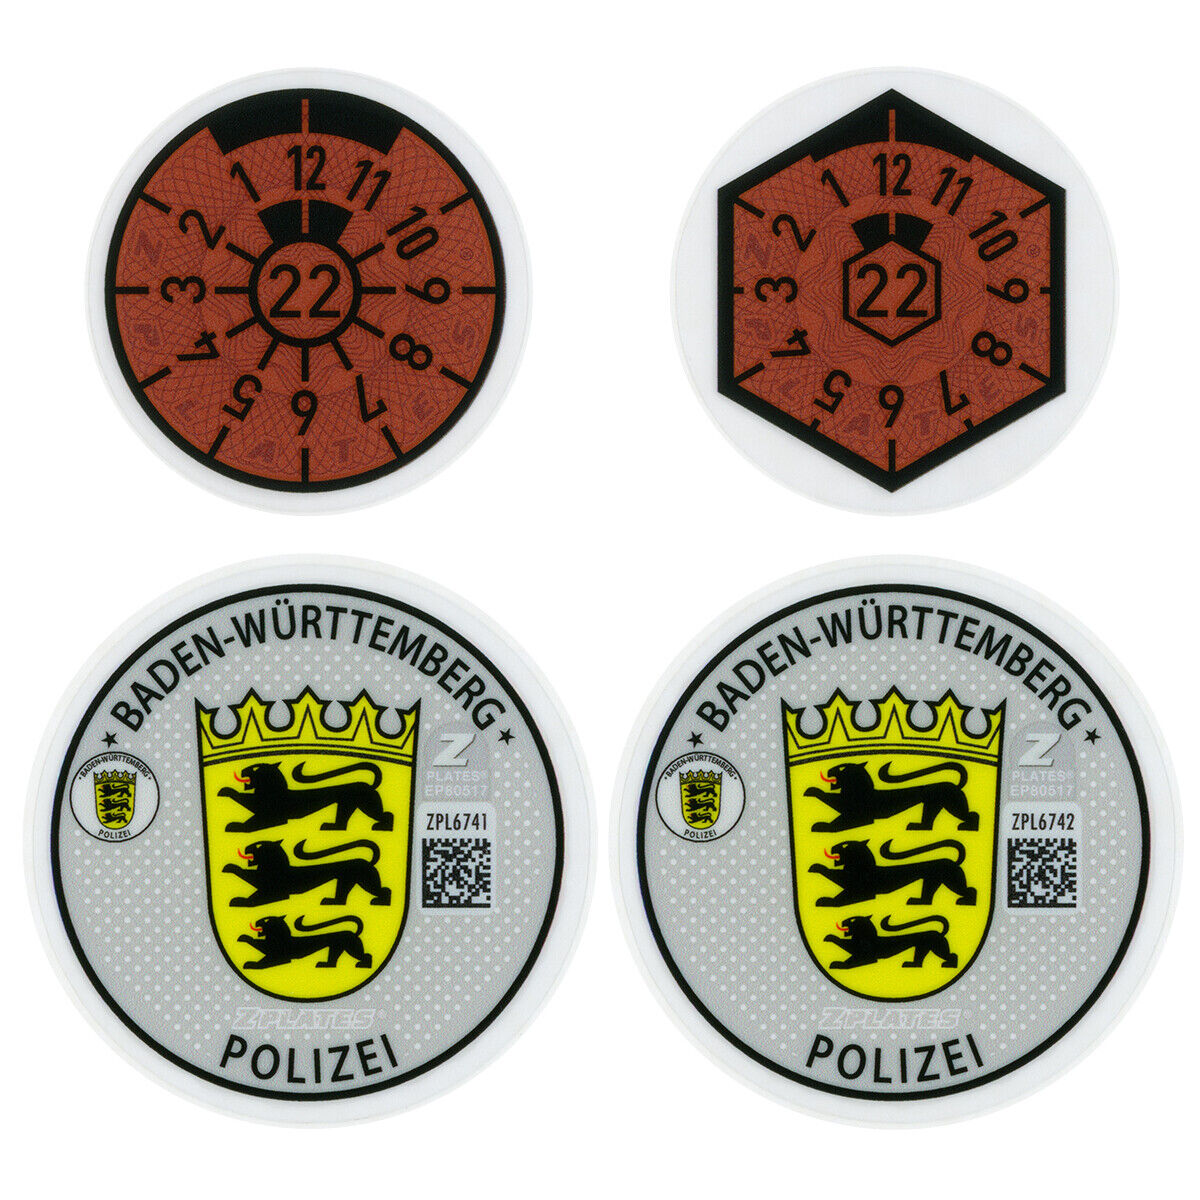 Stuttgart / Baden-Württemberg Police Germany License Plate Complete Sticker Set